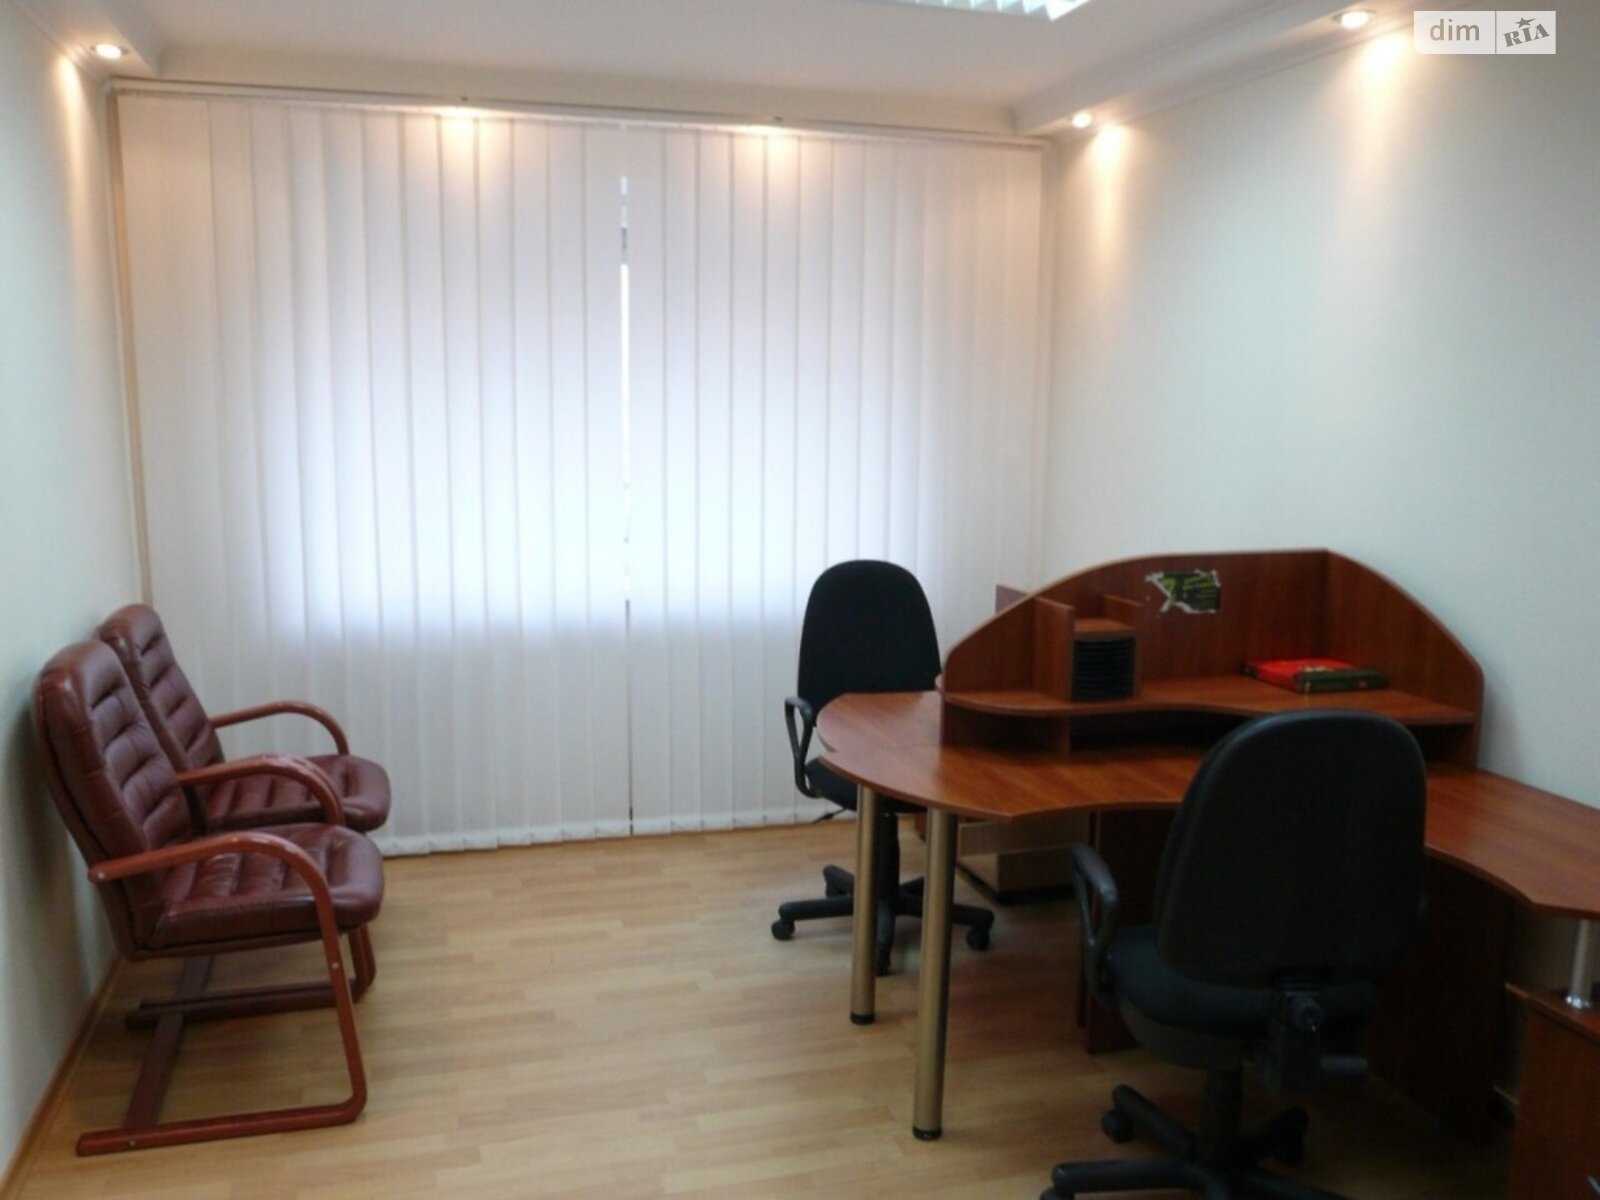 Аренда офисного помещения в Киеве, Неманская улица 2, помещений - 2, этаж - 1 фото 1